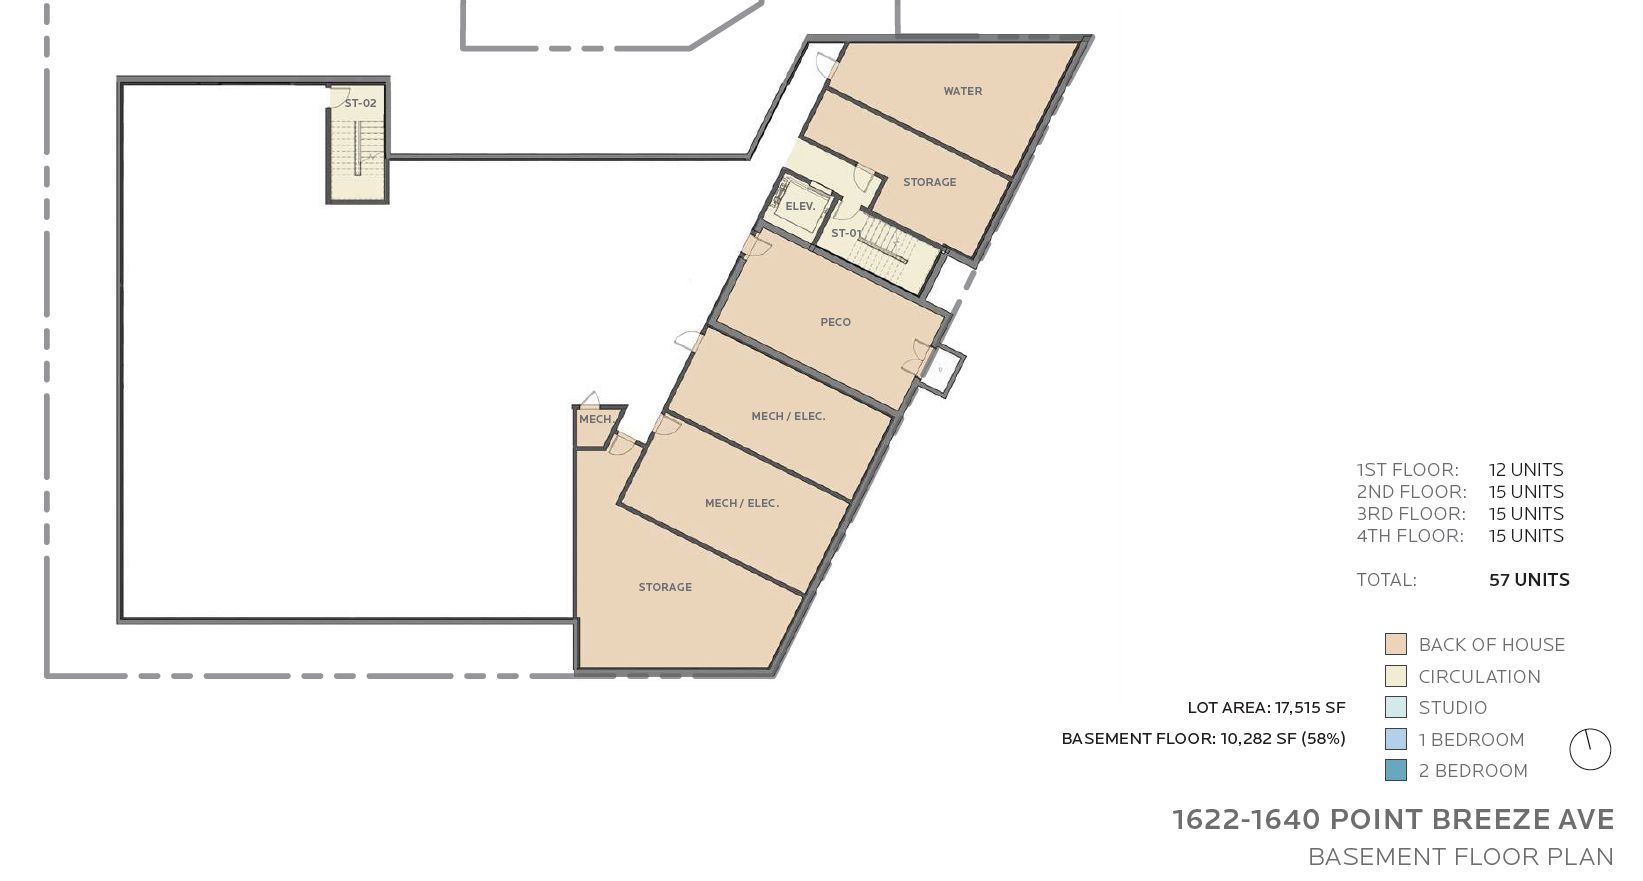 1622-40 Point Breeze Avenue. Floor plan - basement. Credit: JKRP Architects via the Civic Design Review